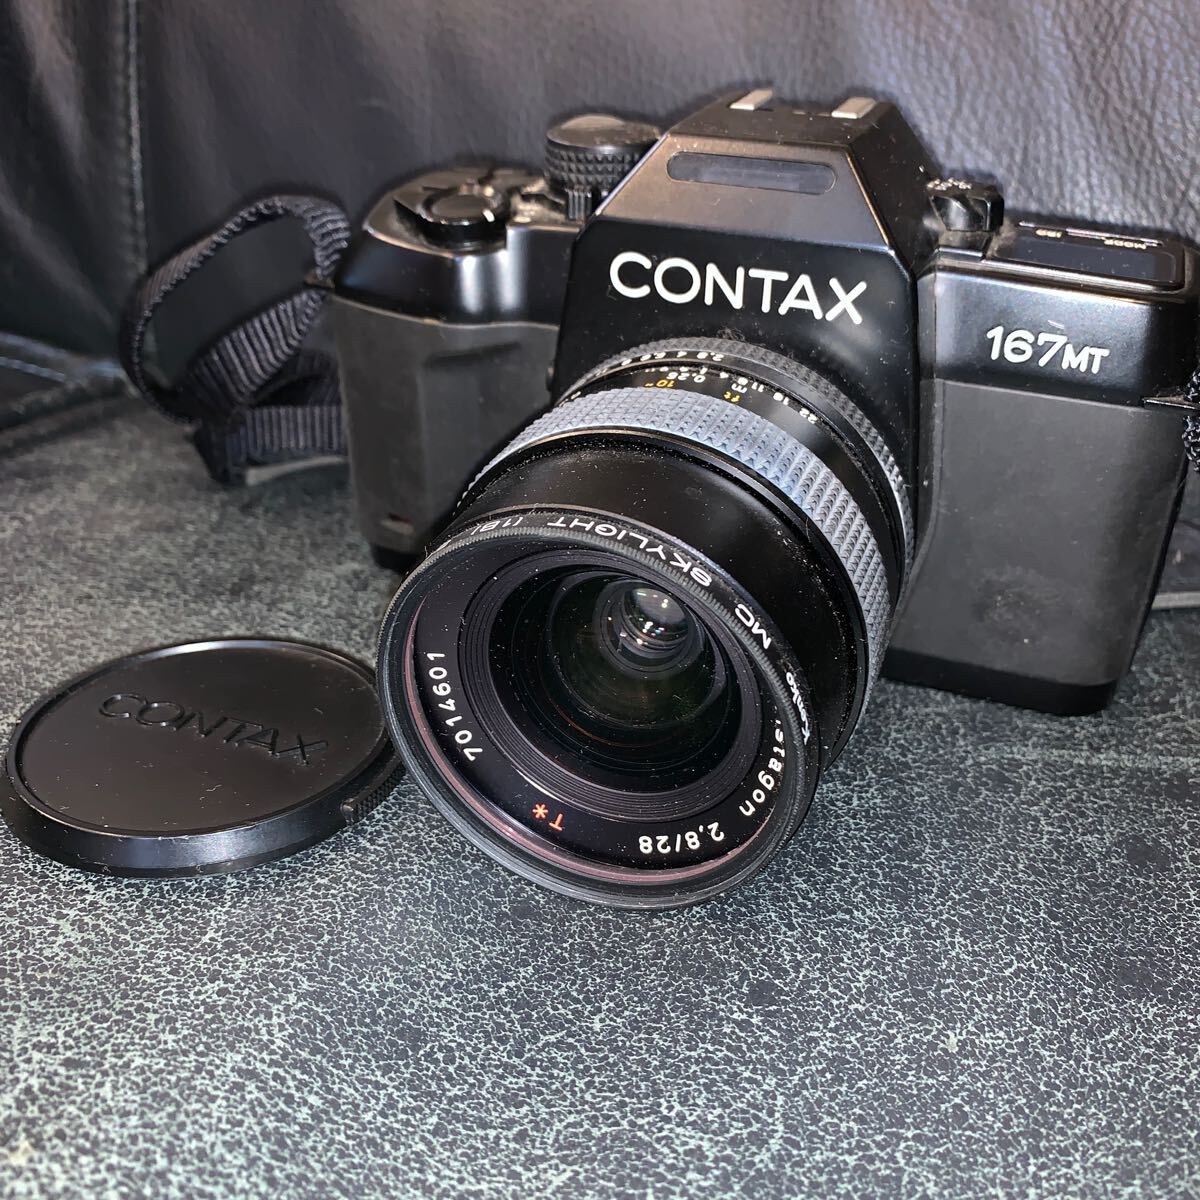 【ジャンク】CONTAX コンタックス 167MT カメラセット 付属品多数あり_画像2